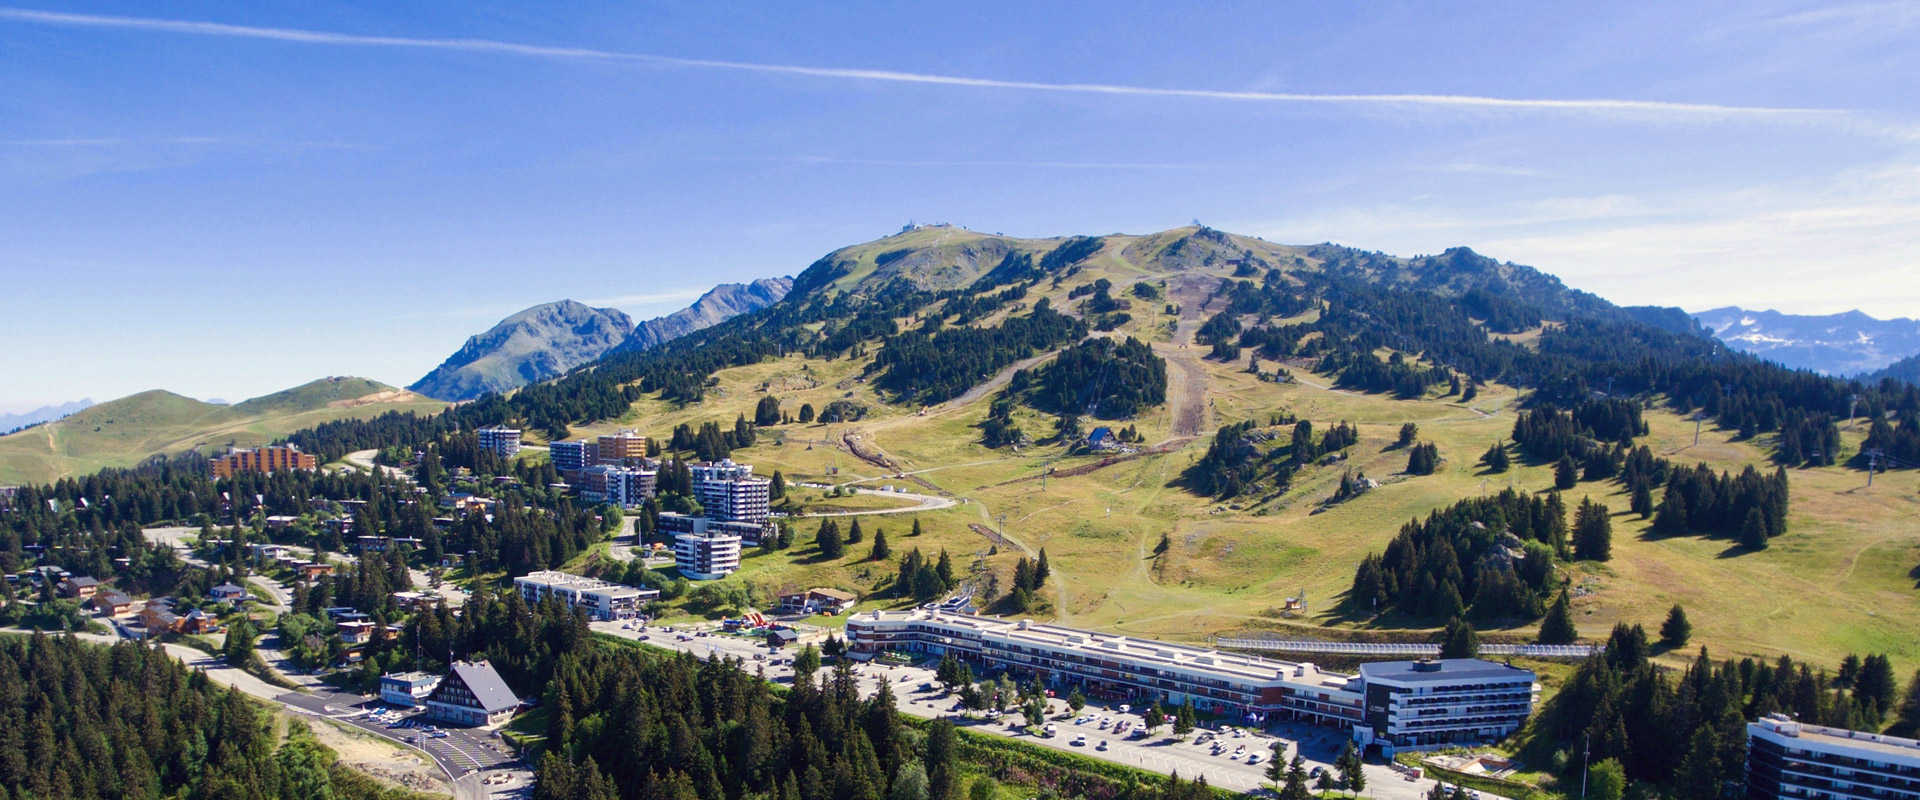 Chamrousse location appartement chalet été station ski montagne grenoble isère alpes france - © Skyview drone